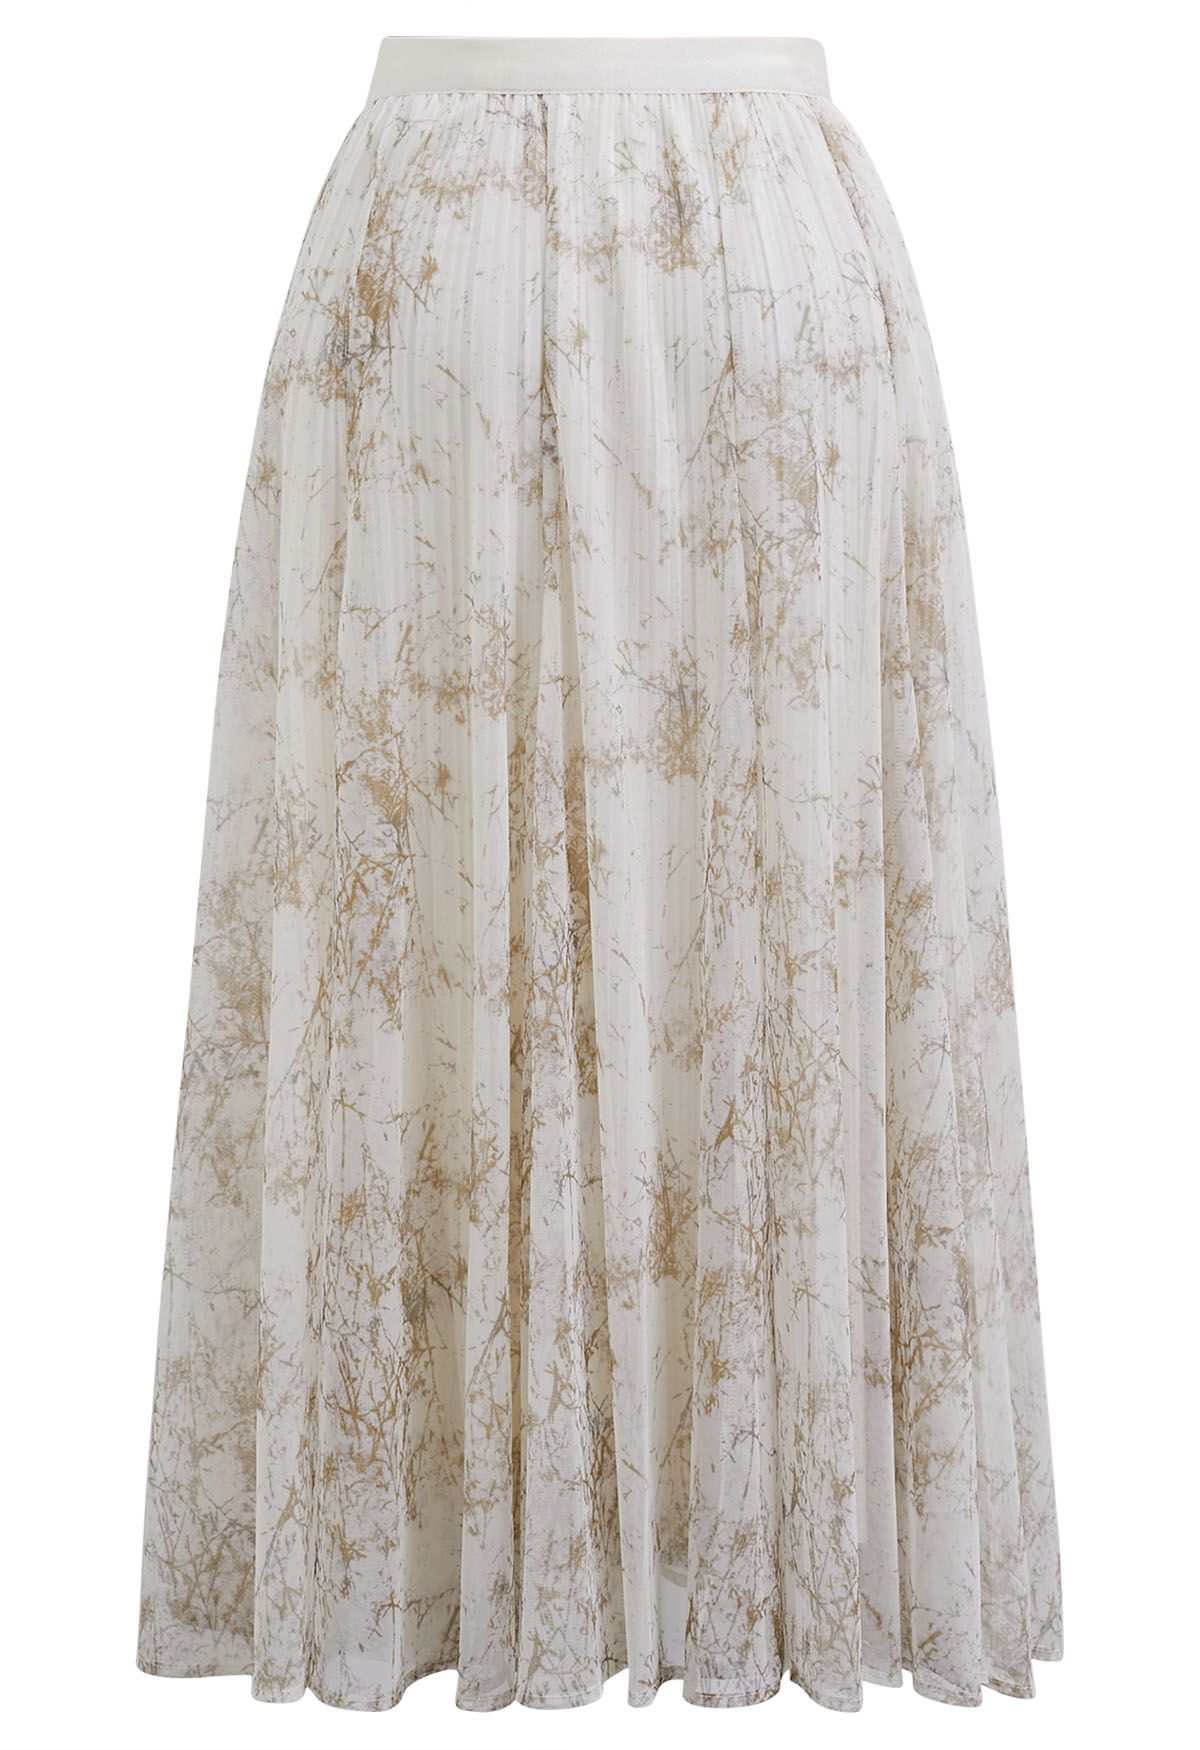 Falda midi de malla plisada con estampado de ramas en color canela